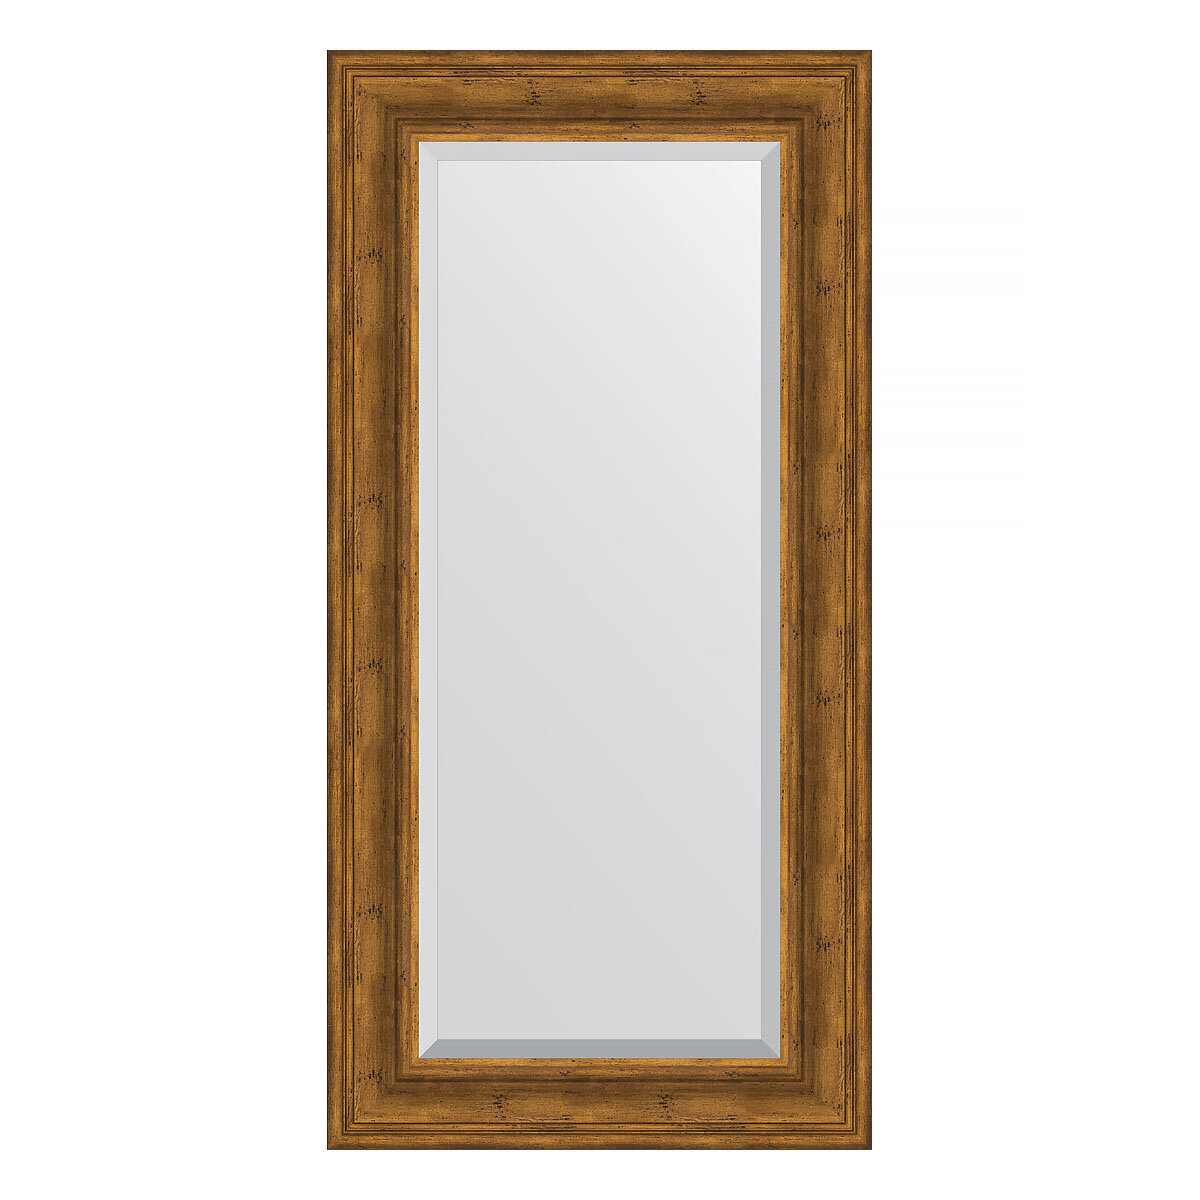 Зеркало настенное с фацетом EVOFORM в багетной раме травленая бронза, 59х119 см, для гостиной, прихожей, кабинета, спальни и ванной комнаты, BY 3498